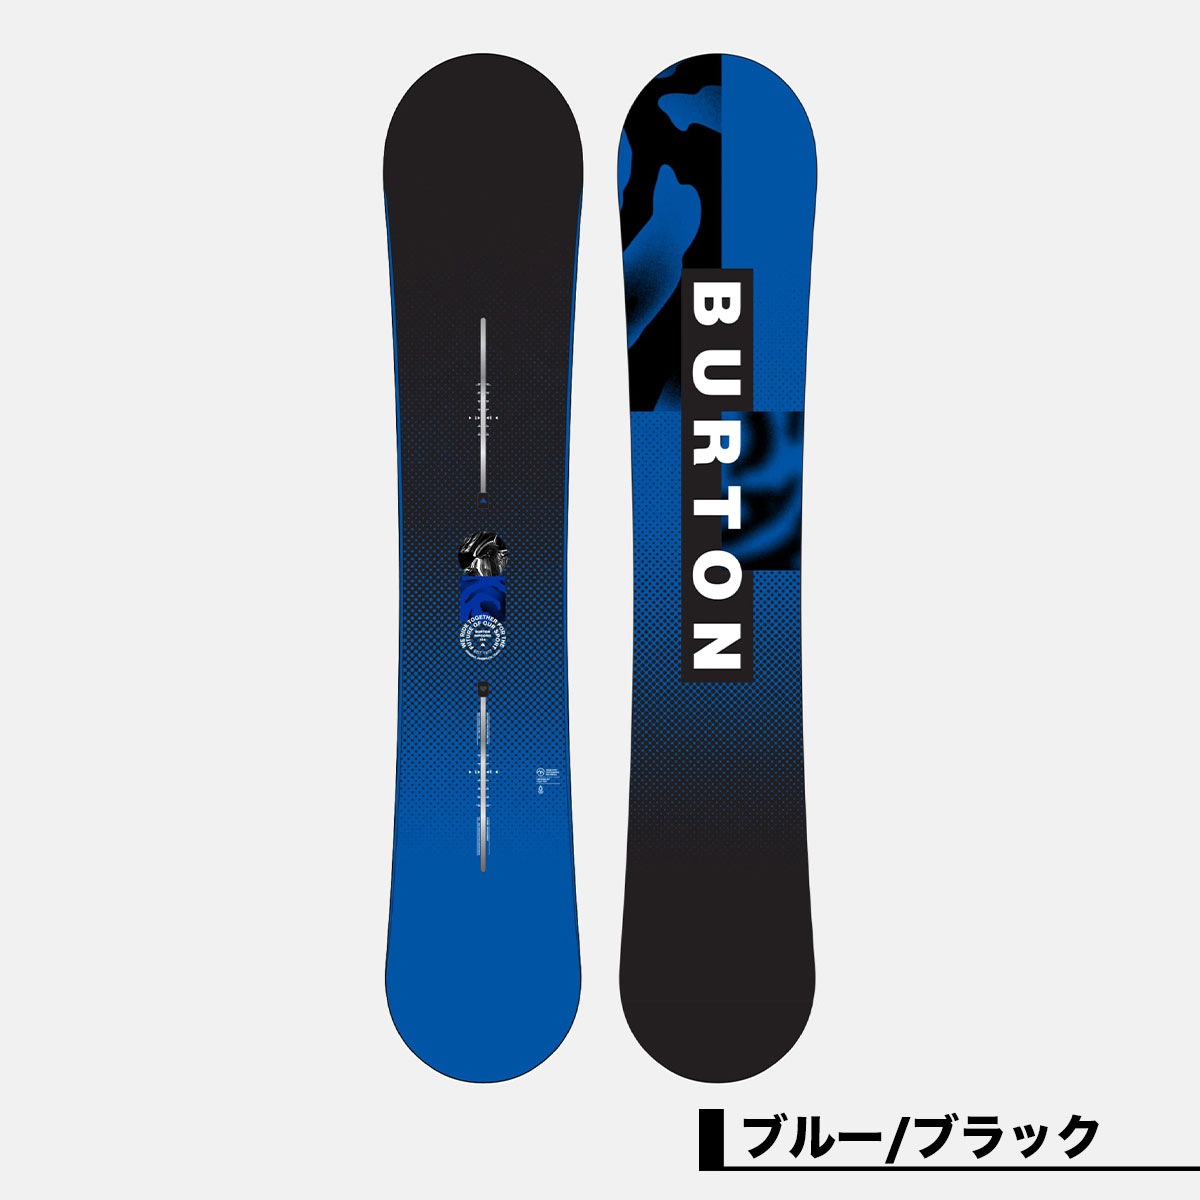 ◆ スノーボード BURTON CRUZER 154 cm スノボ クルーザー